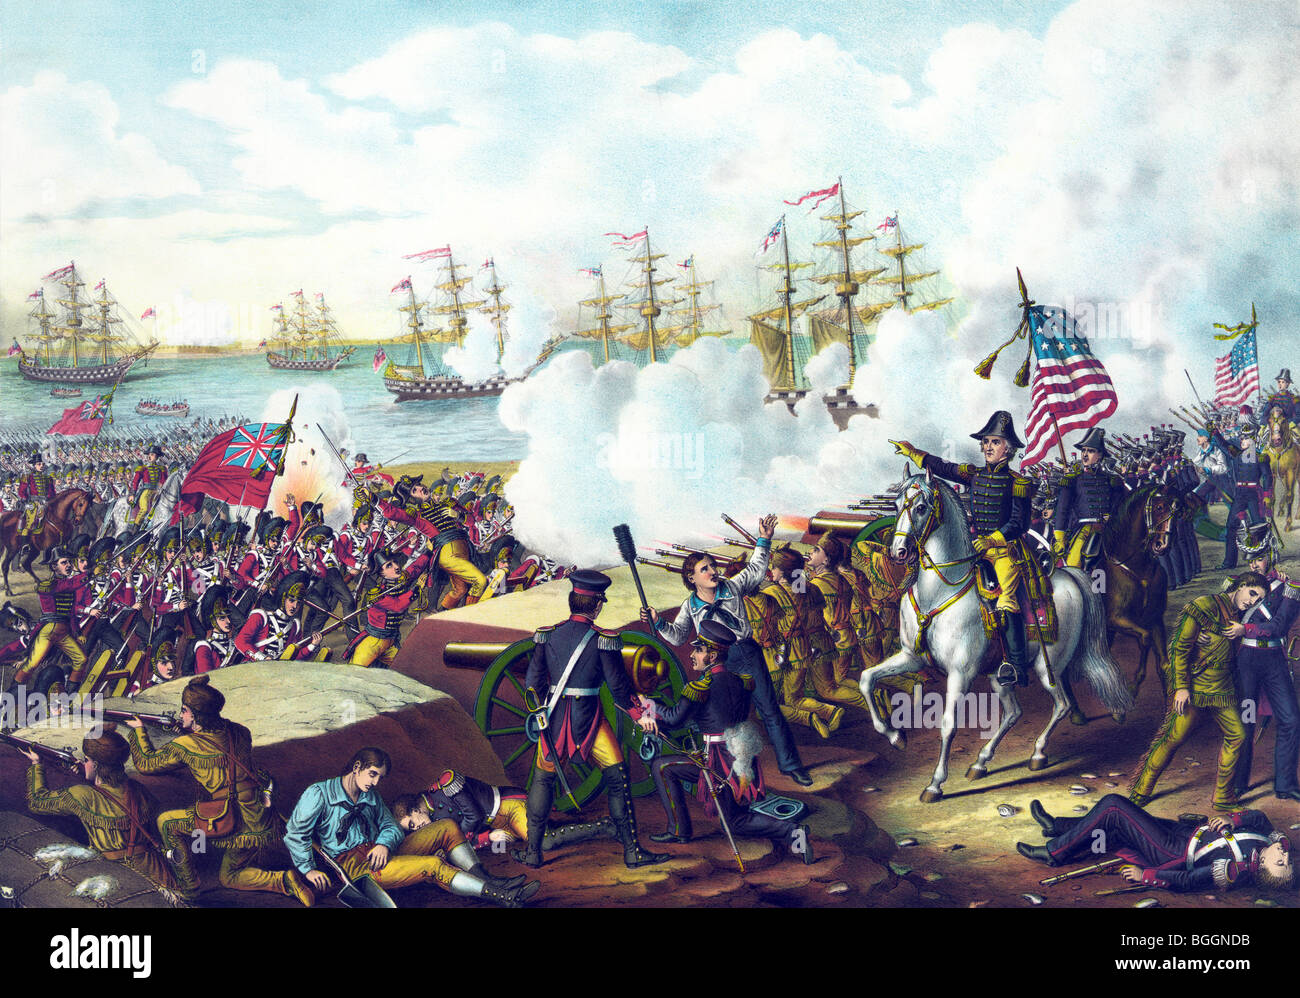 Imprimer représentant le dernier jour de la bataille de la Nouvelle Orléans le 8 janvier 1815 dans laquelle les forces américaines ont défait l'armée britannique. Banque D'Images